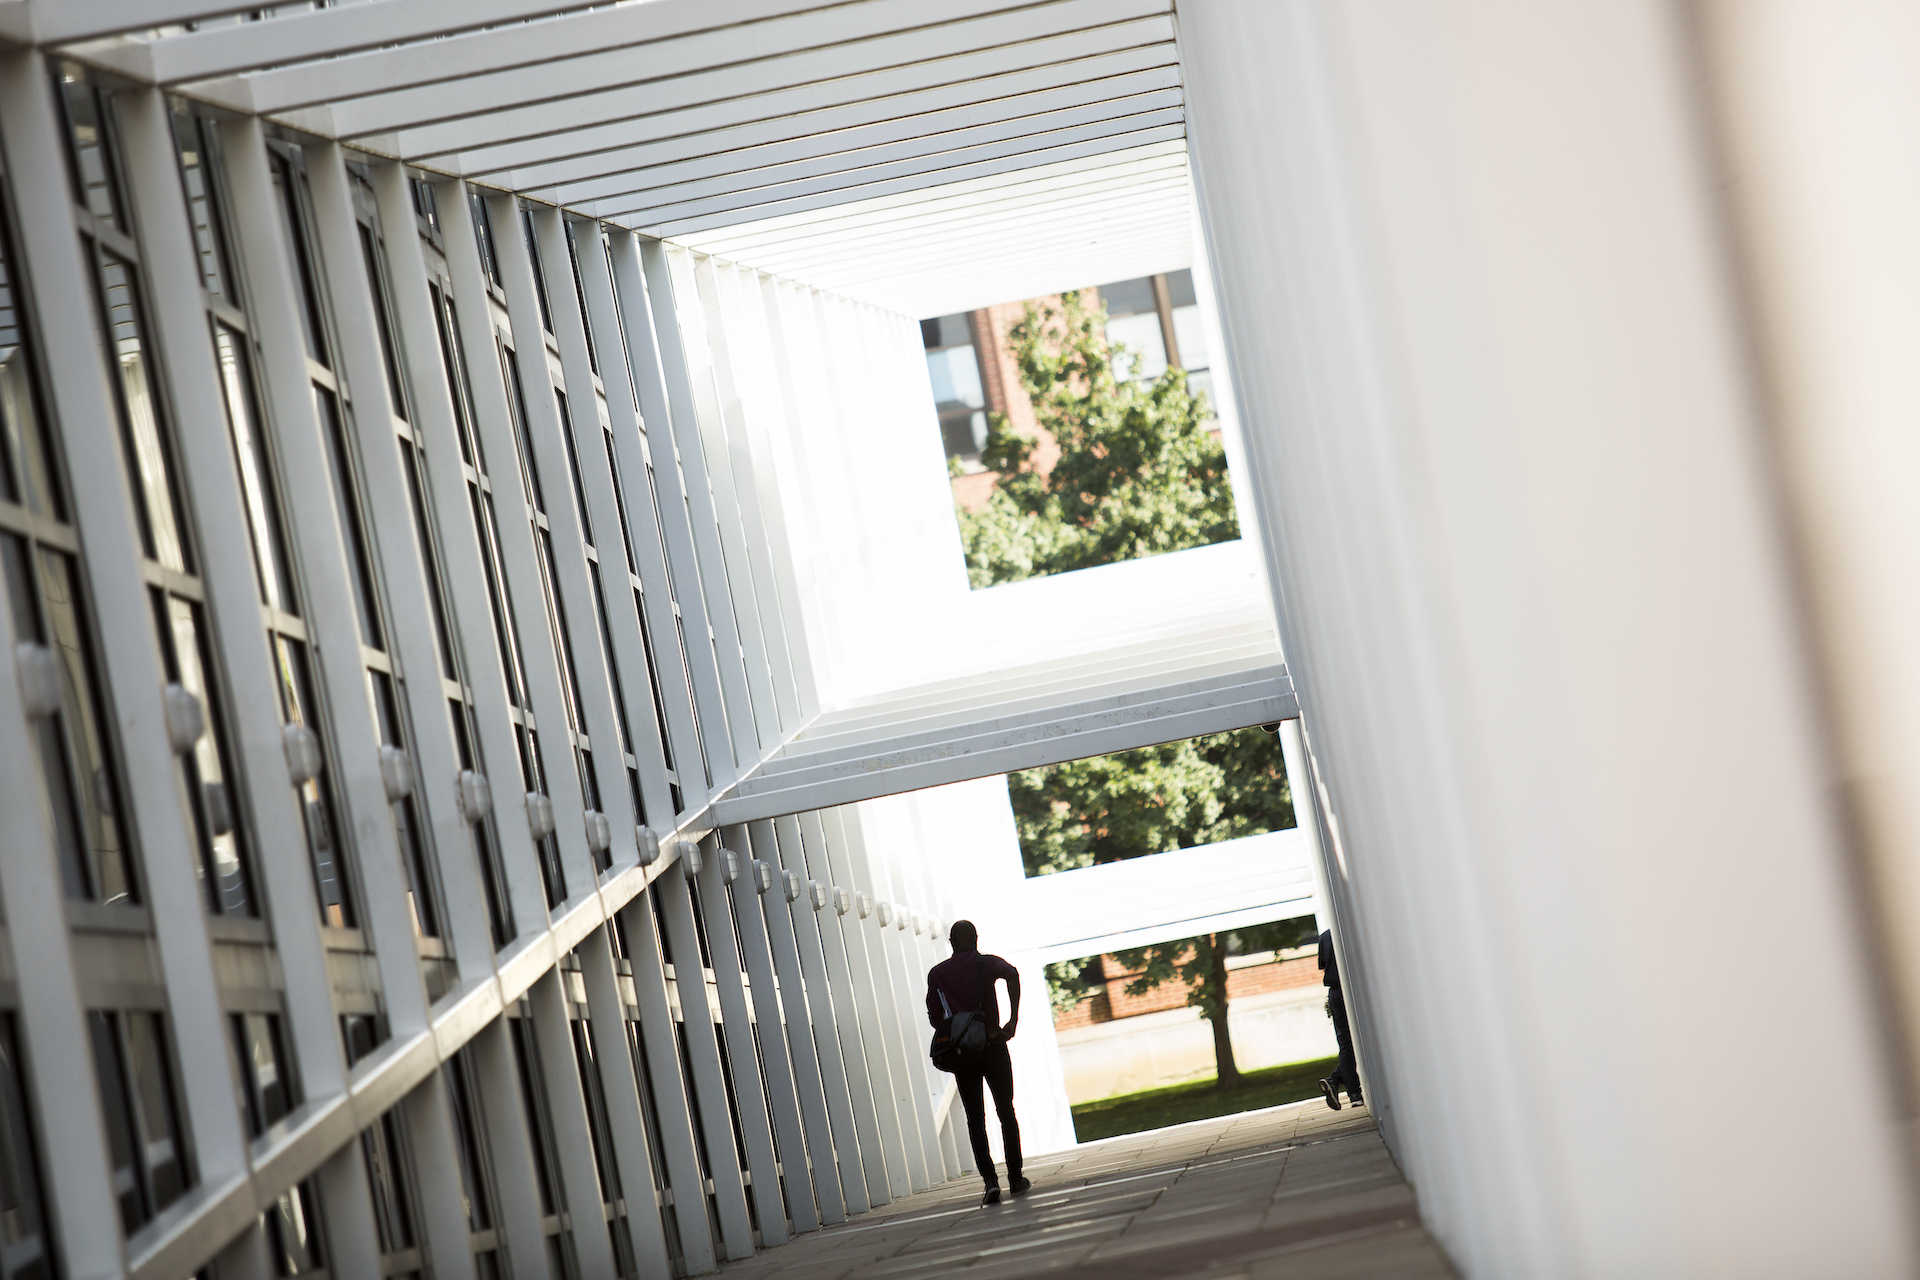 A faculty member walks in an outdoor corridor.